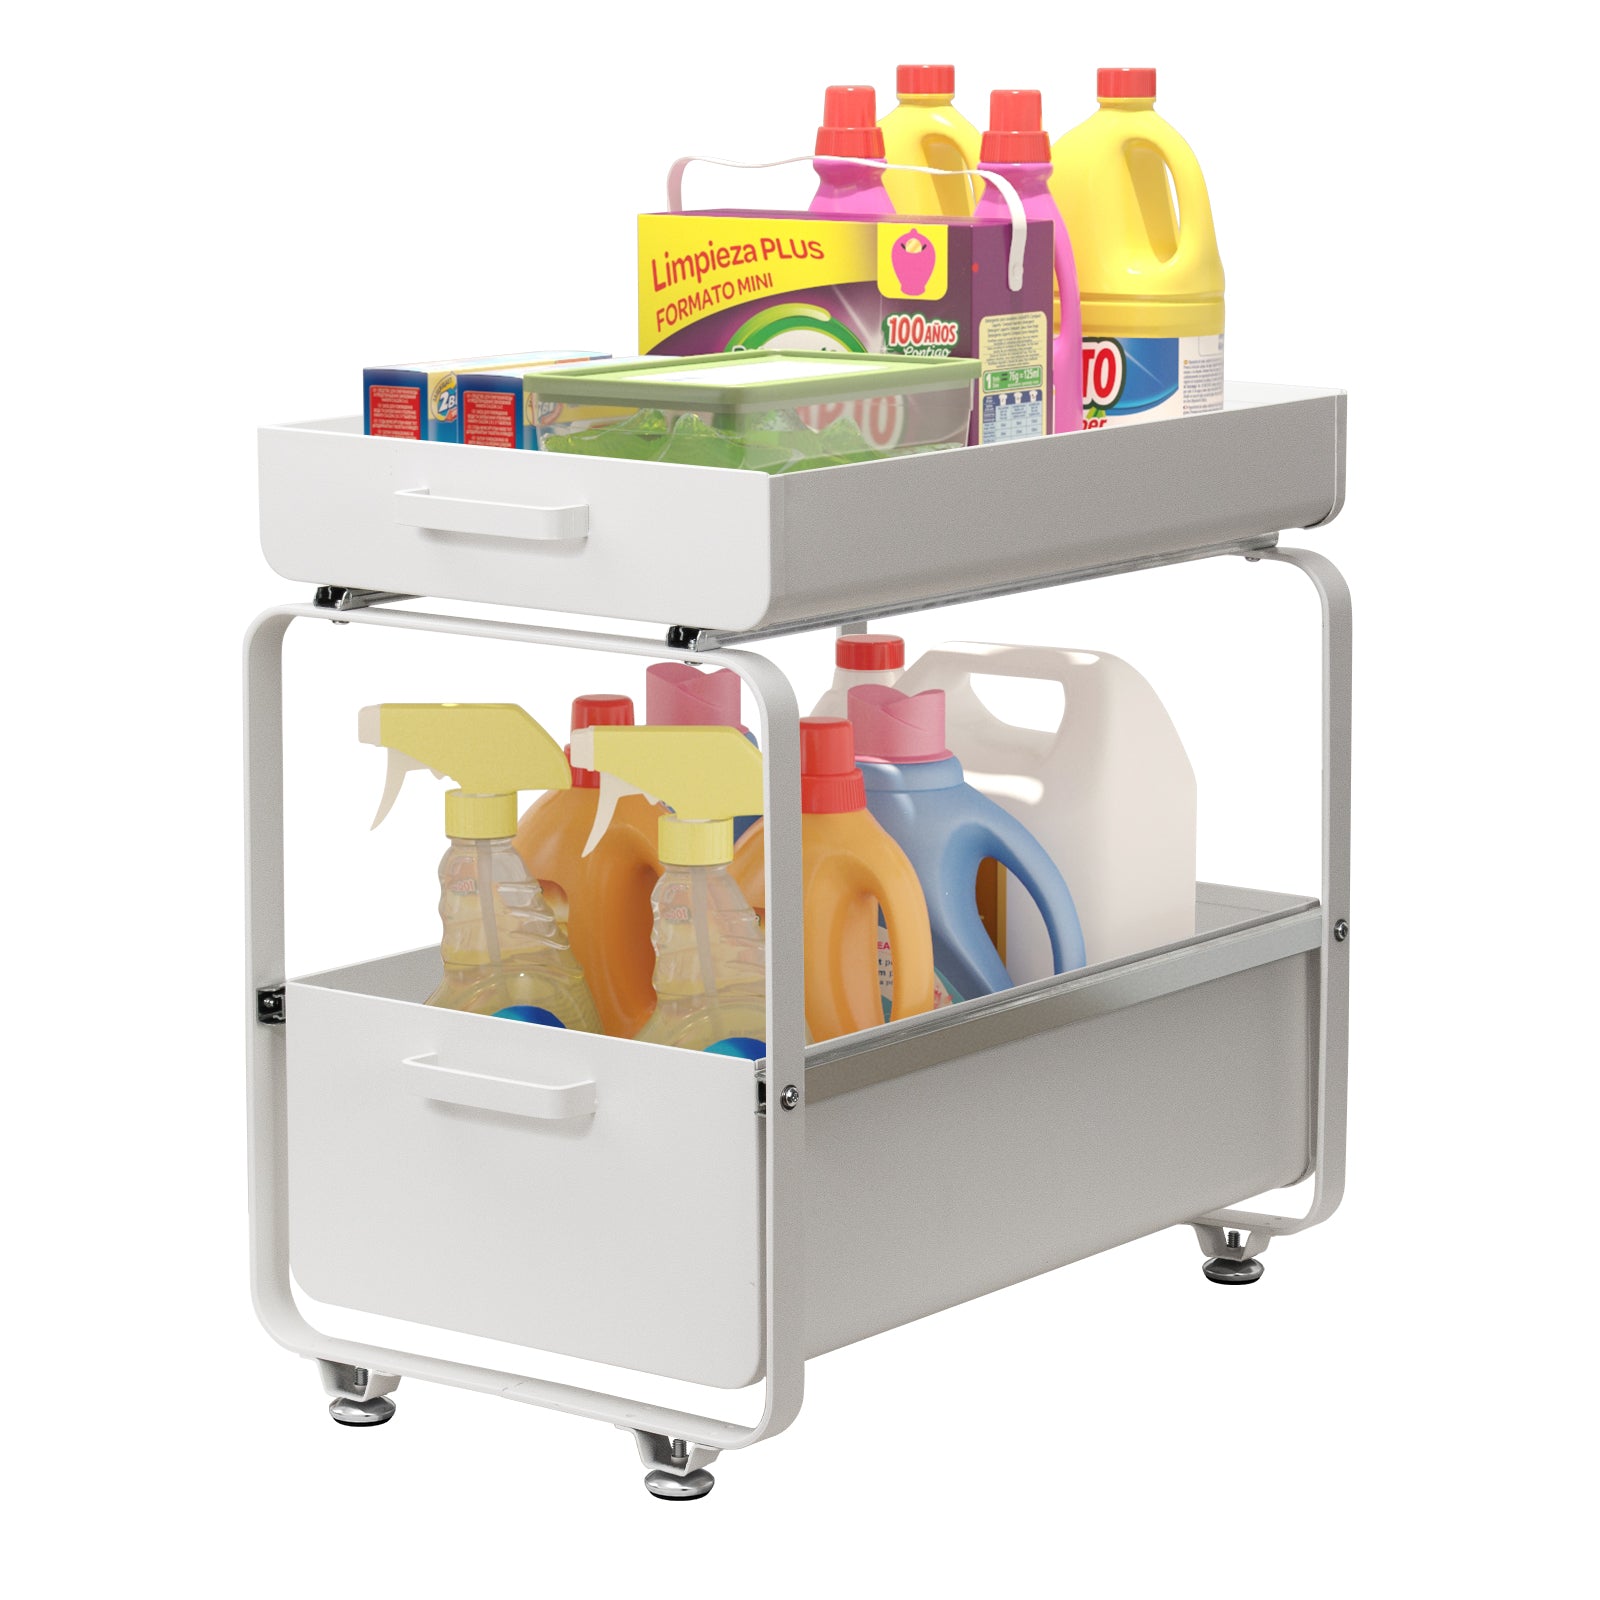 Todeco-Under-Sink-Storage-Shelf-2-Tier-Kitchen-Organizer-Under-Sink-Storage-Sliding-Organizer-for-Kitchen-Bathroom-Cabinet-Carbon-Steel-White-Under-Sink-Storage-Shelf-White